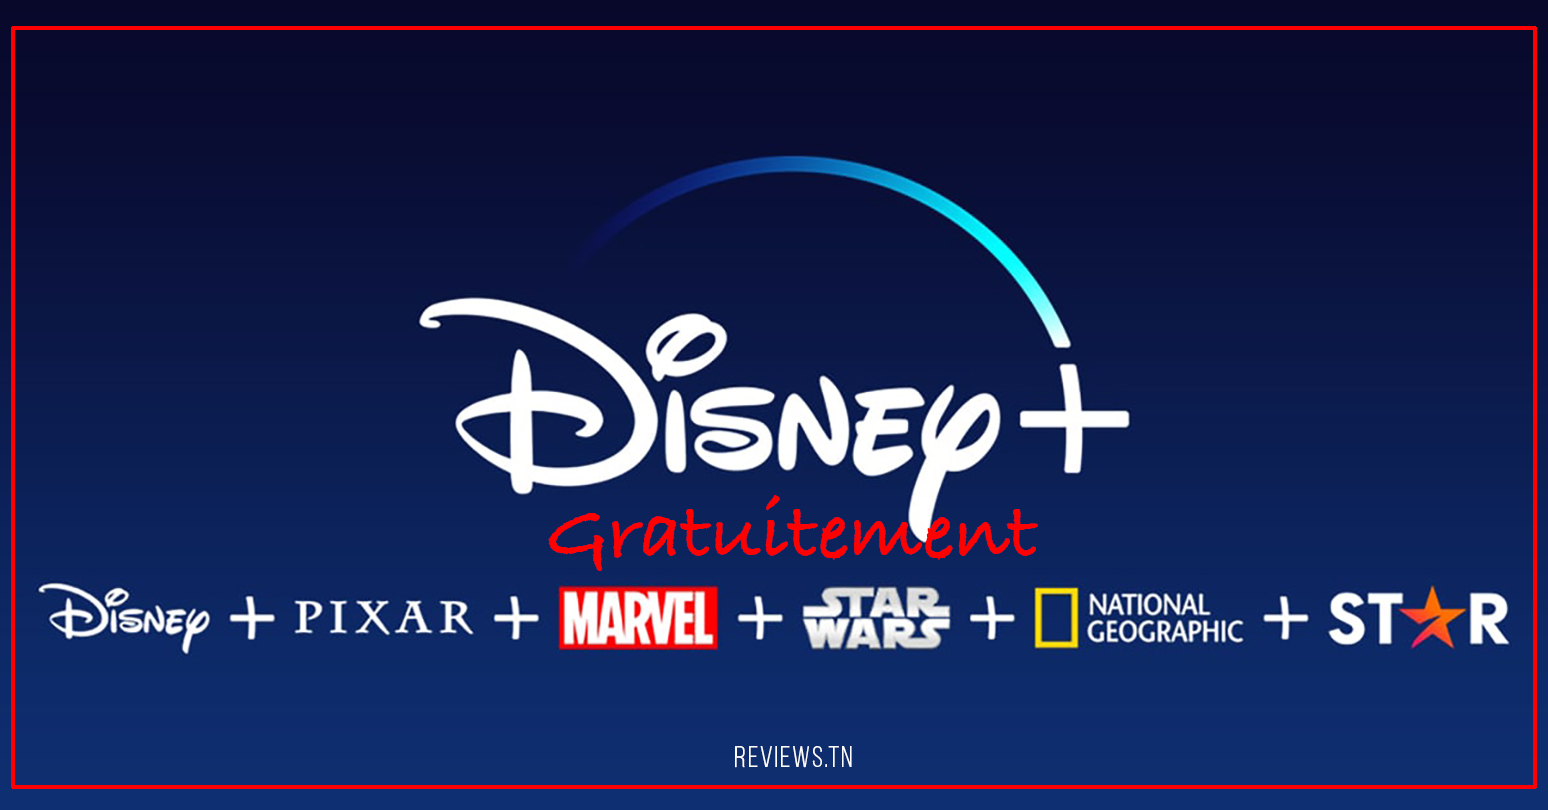 Transmisión: como obter unha proba de Disney Plus gratis en 2022? (6 meses)